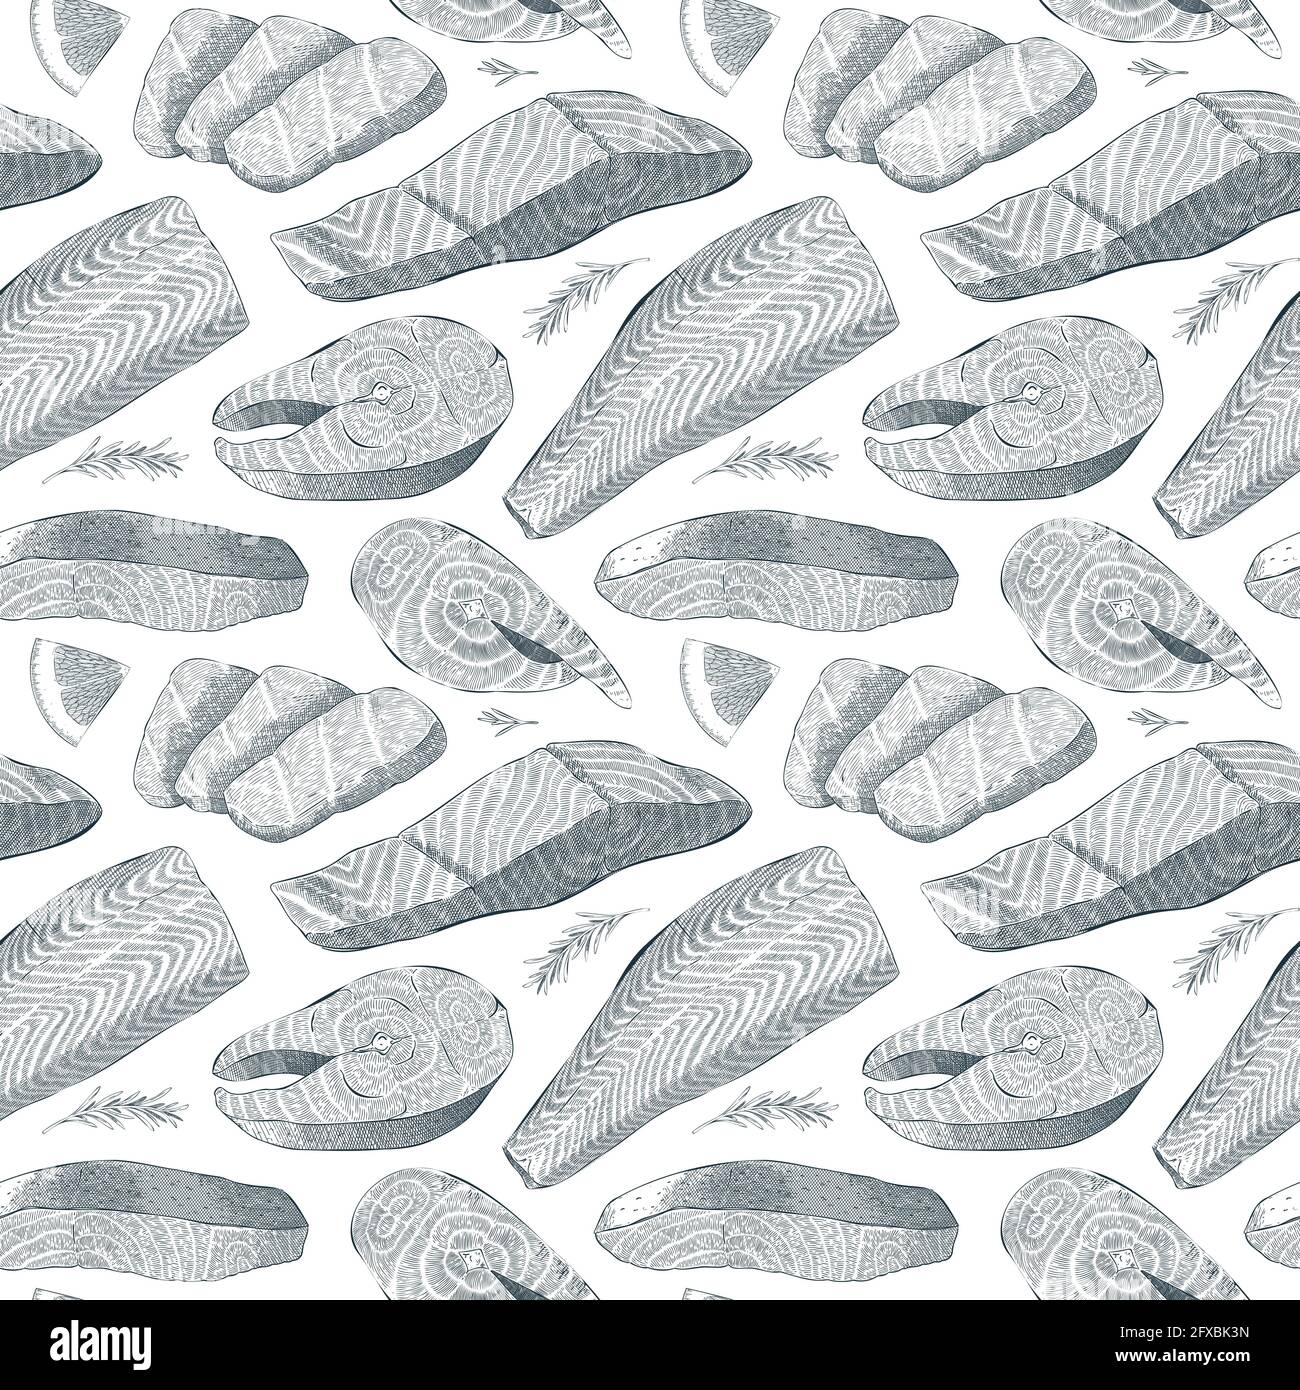 Saumon motif de fruits de mer, encre illustration réaliste de poisson de mer, filet de saumon, steak, ingrédients de cuisson détaillés, l'art de hacher, sans couture Illustration de Vecteur